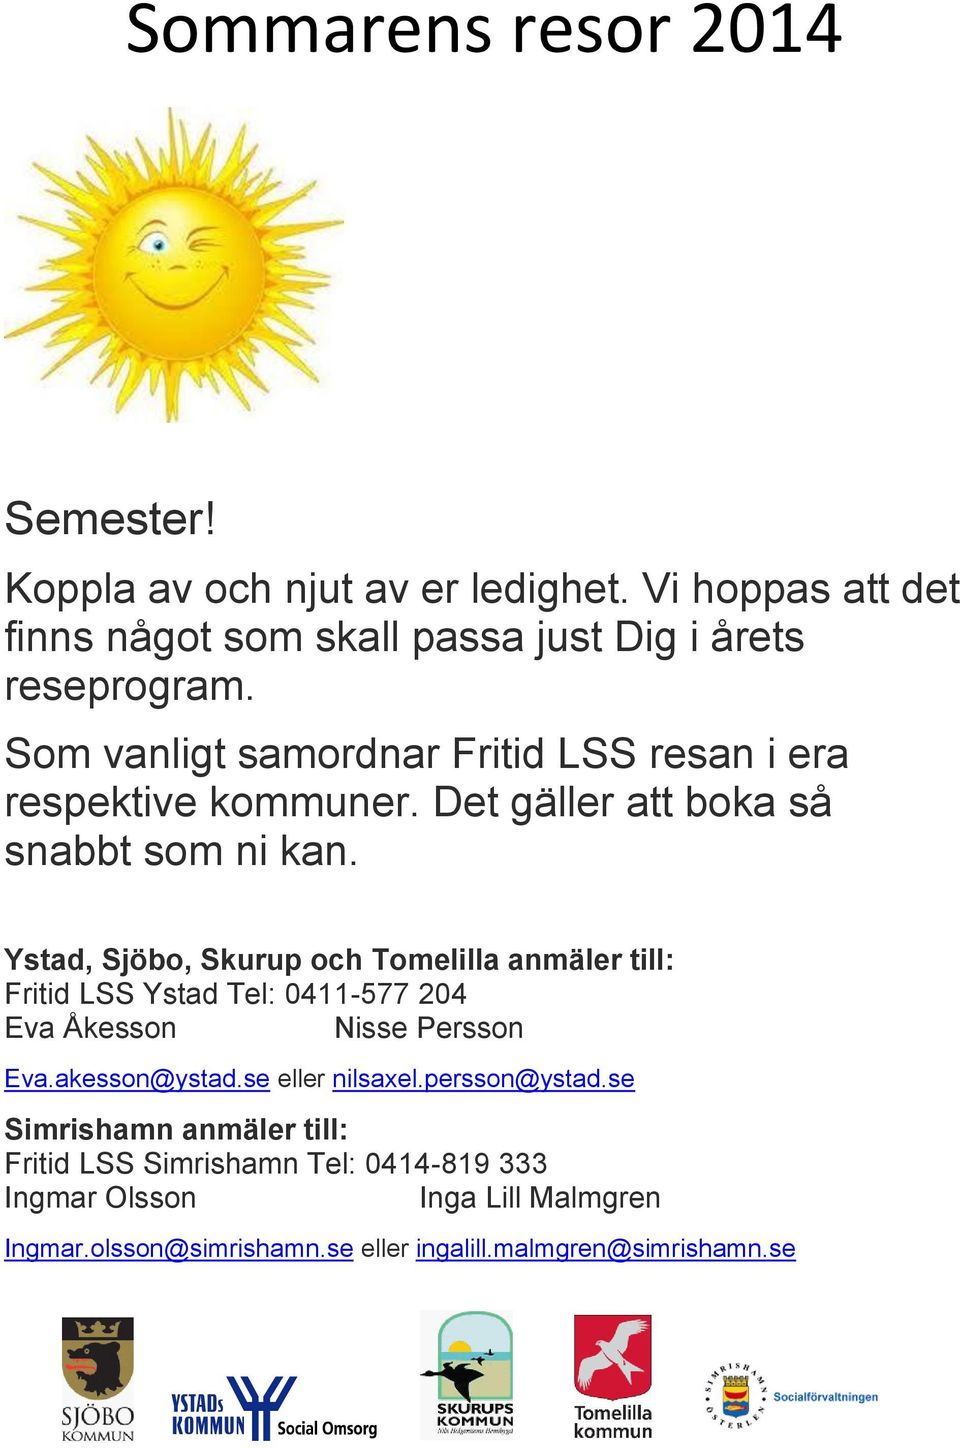 Ystad, Sjöbo, Skurup och Tomelilla anmäler till: Fritid LSS Ystad Tel: 0411-577 204 Eva Åkesson Nisse Persson Eva.akesson@ystad.